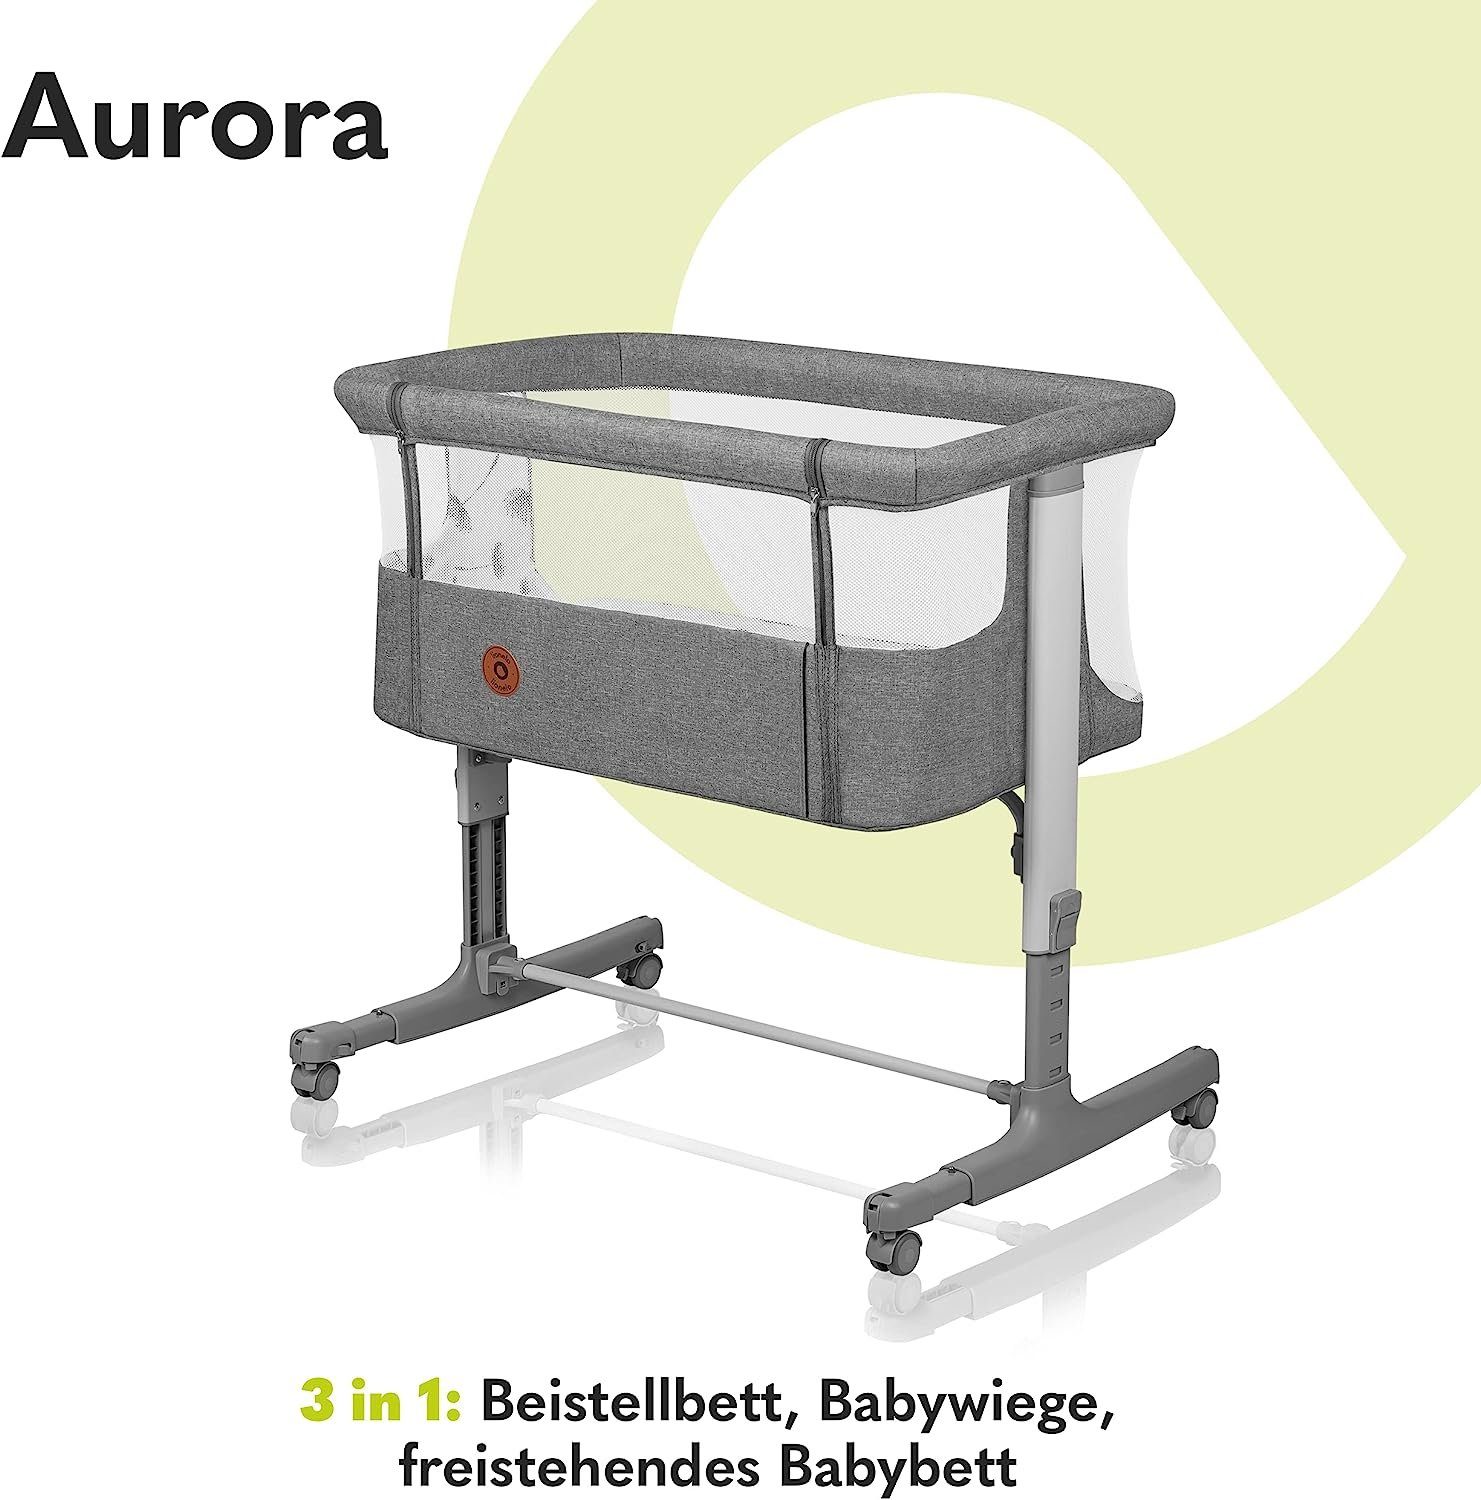 lionelo freistehendes Babywiege, Grau 3-in-1: AURORA, Beistellbett, Baby-Reisebett Babybett